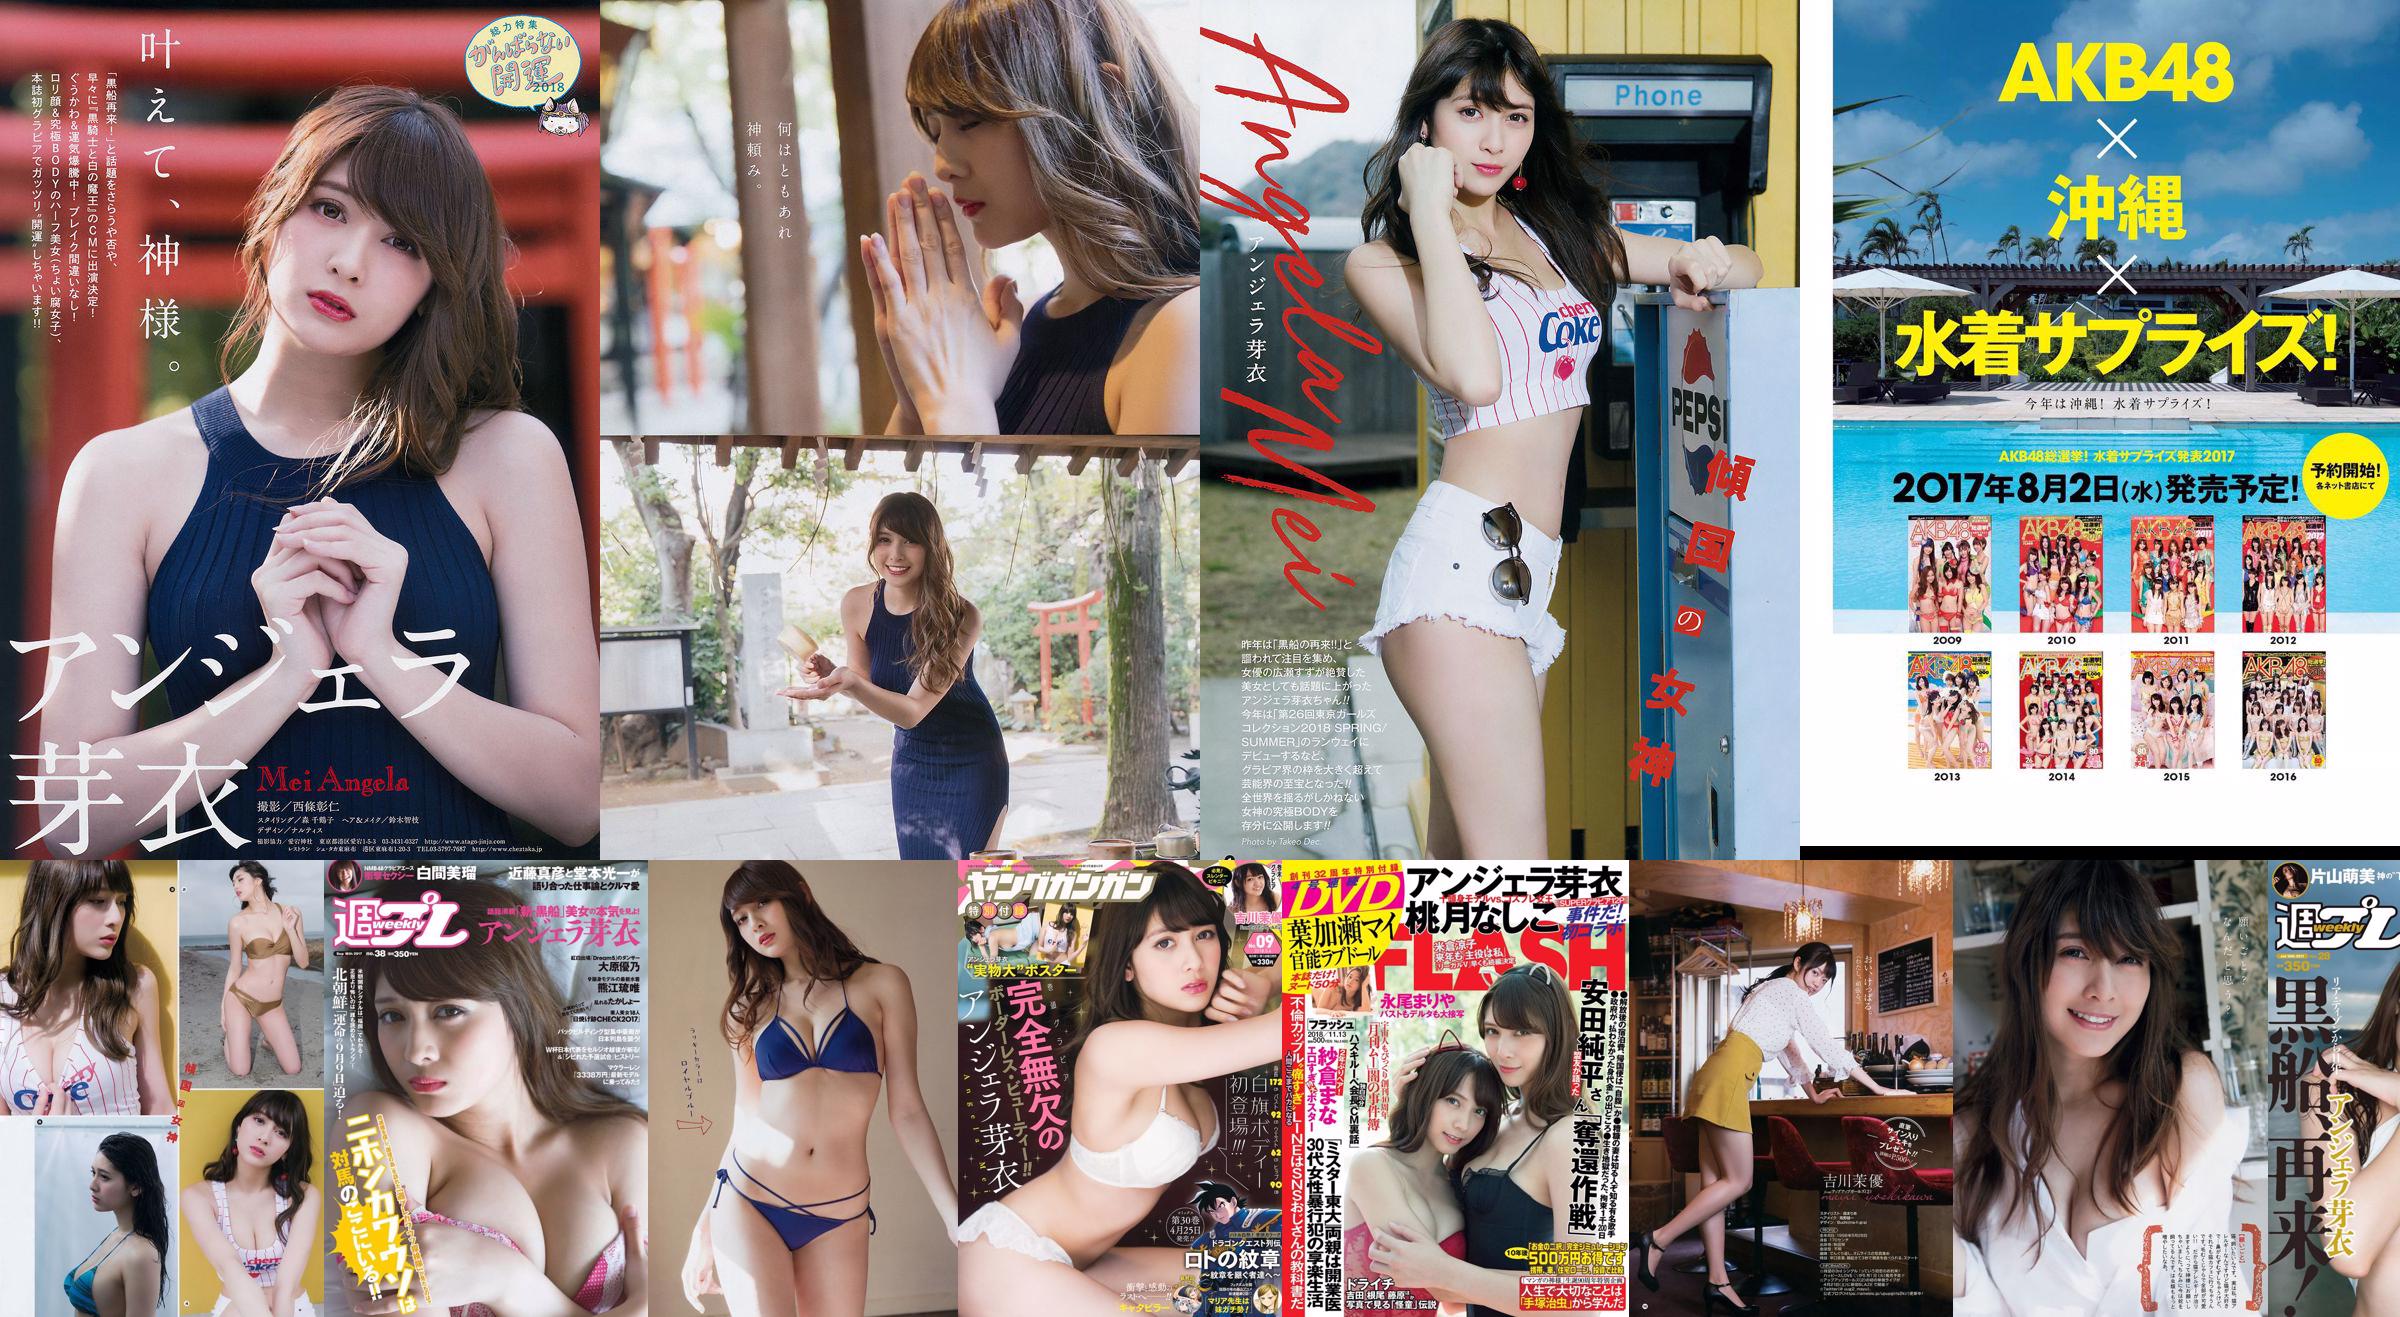 Angela Mei Riho Abiru Yuuna Suzuki Yuno Ohara Moemi Katayama Ito Ohno [Weekly Playboy] 2017 No.28 Photograph No.2cfe77 Page 3